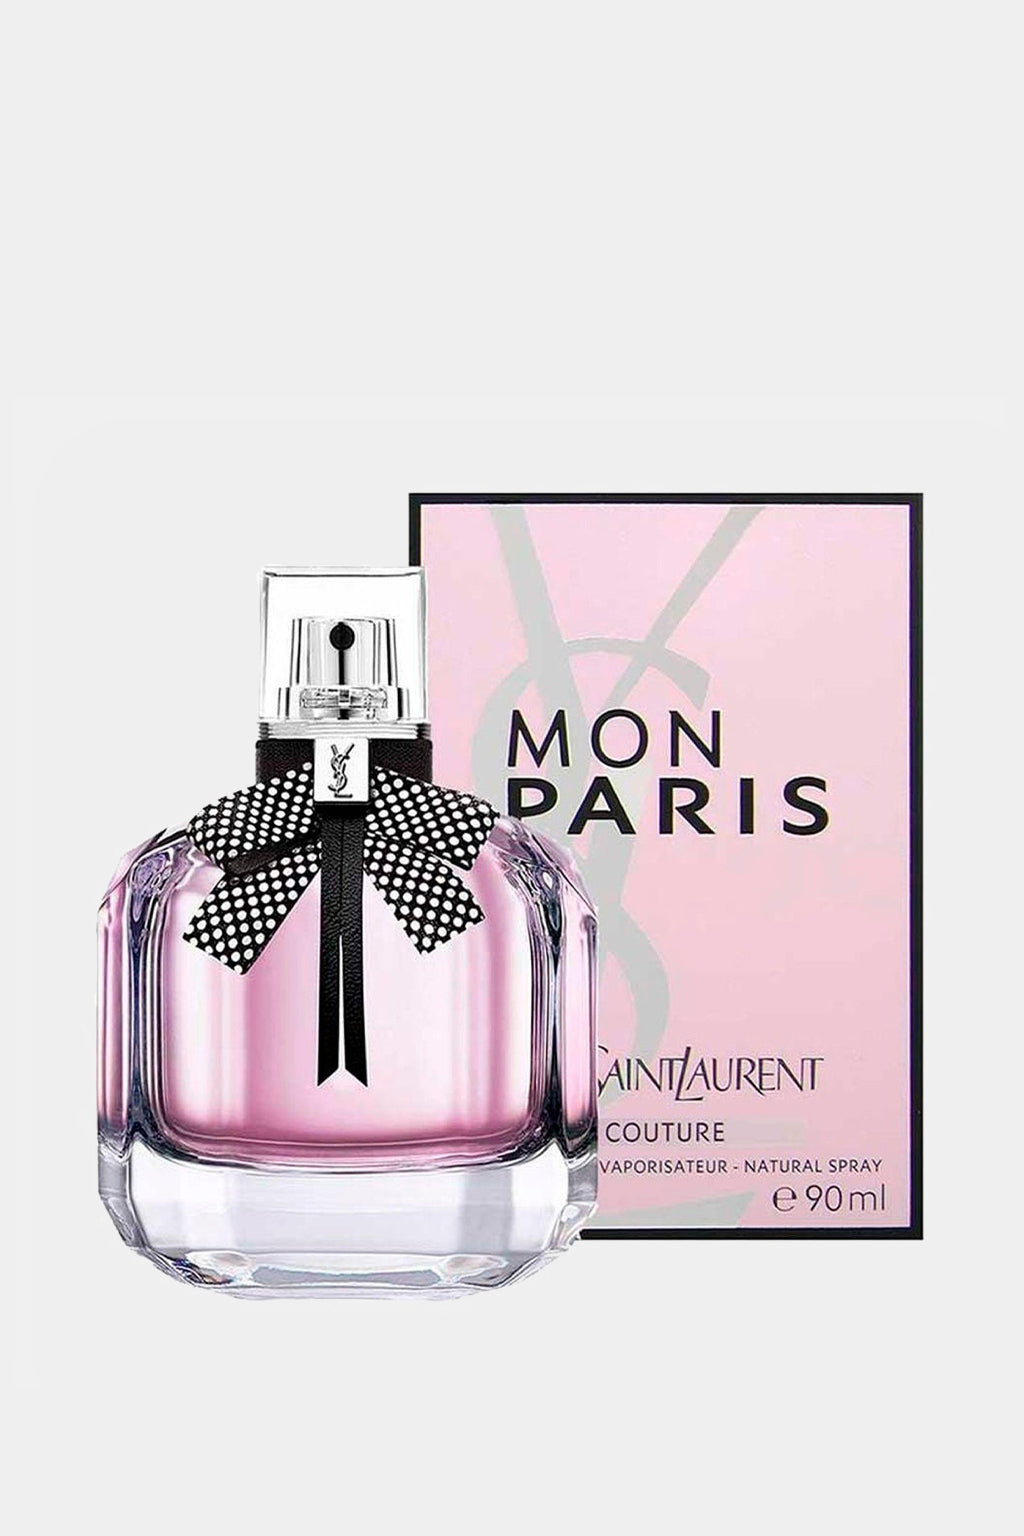 Yves Saint Laurent - Mon Paris Couture Eau de Parfum